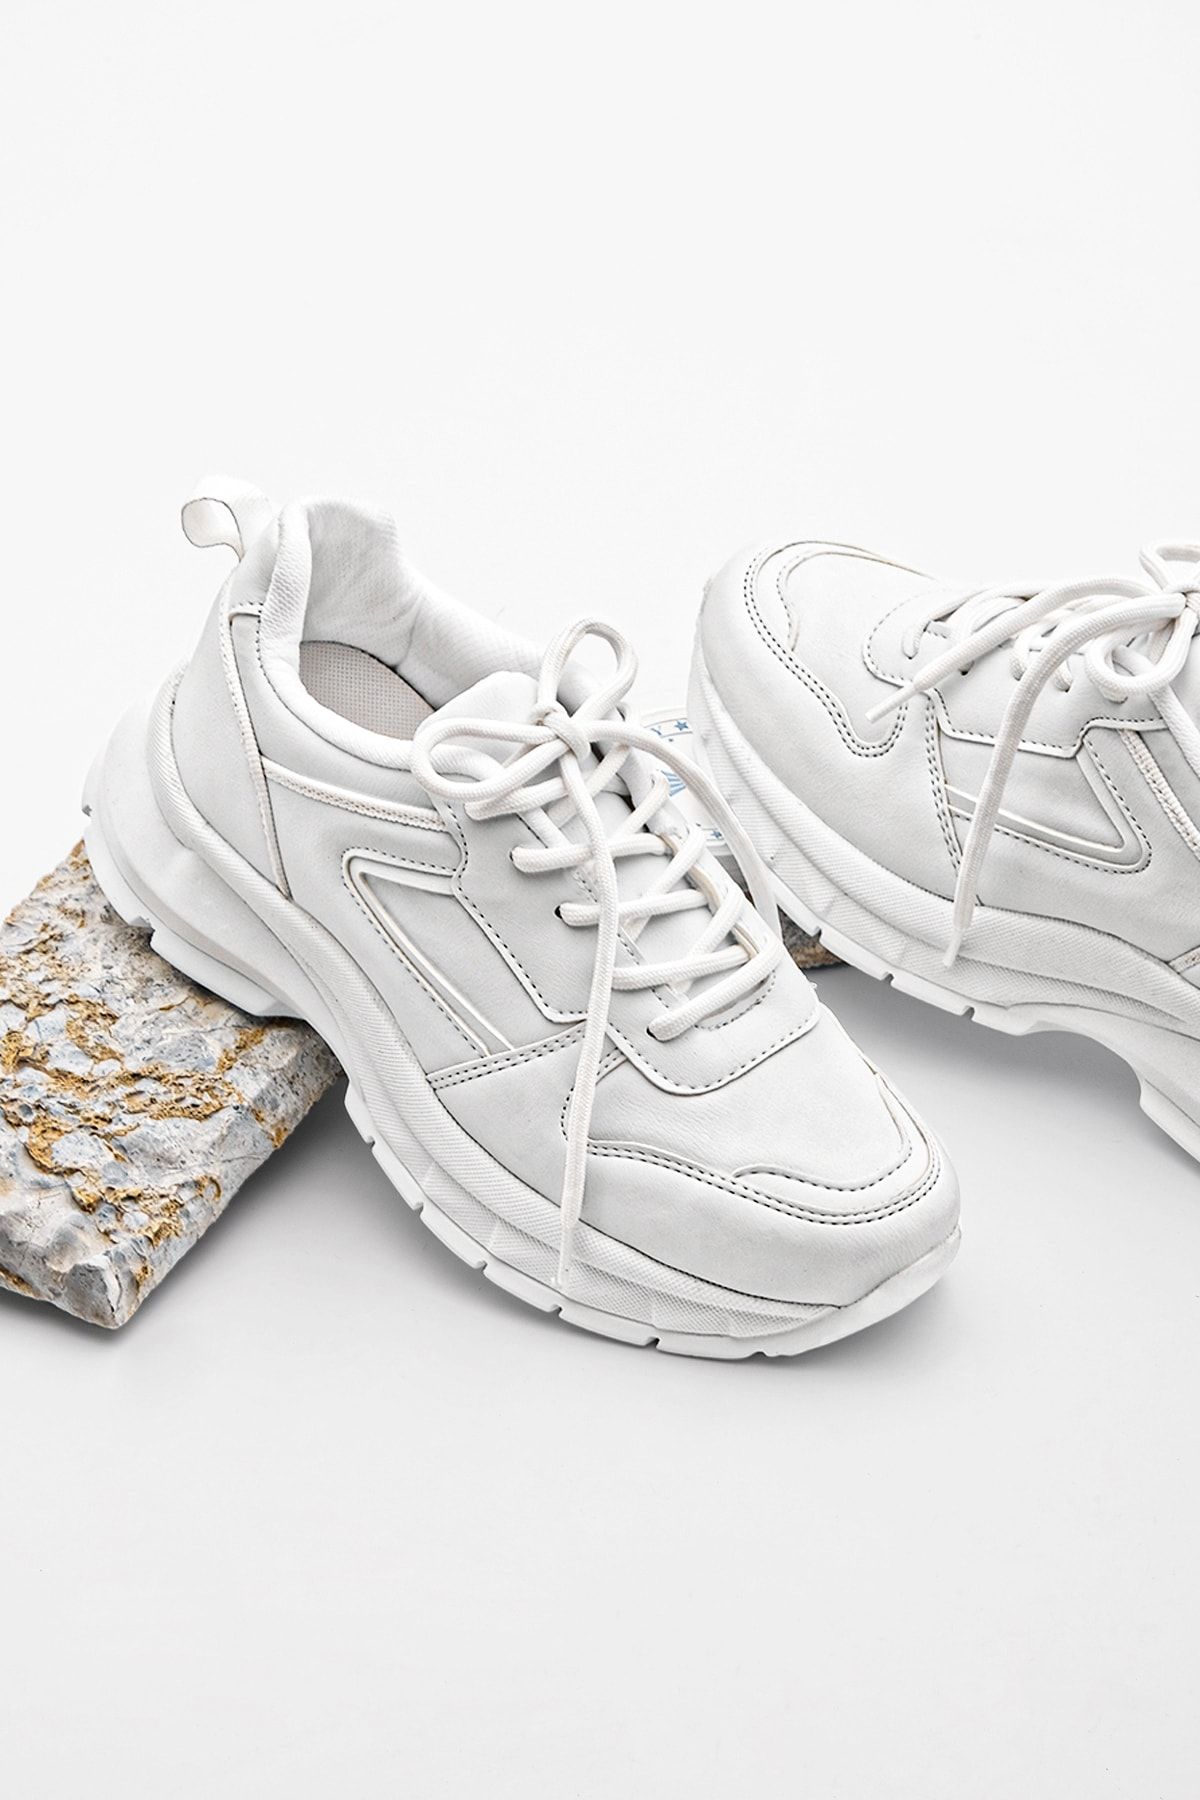 Marjin Kadın Sneaker Kalın Taban Bağcıklı Spor Ayakkabı Besri Beyaz